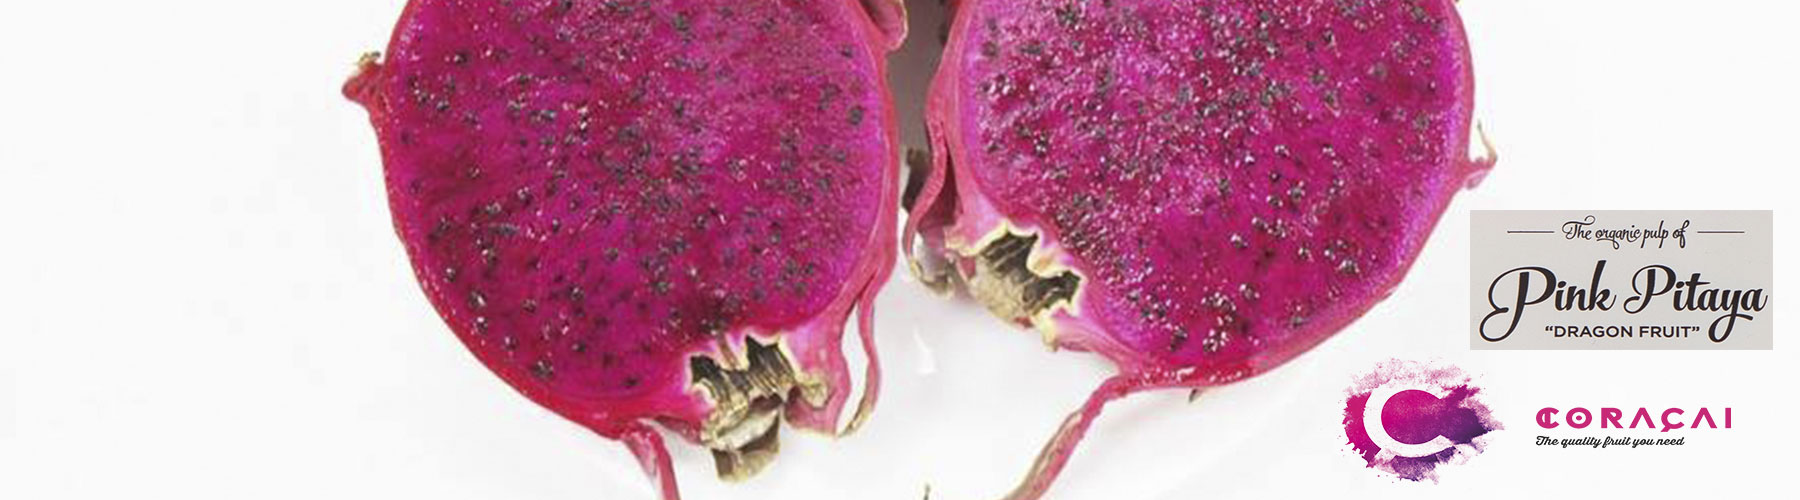 pitaya fruit taste coraçaí